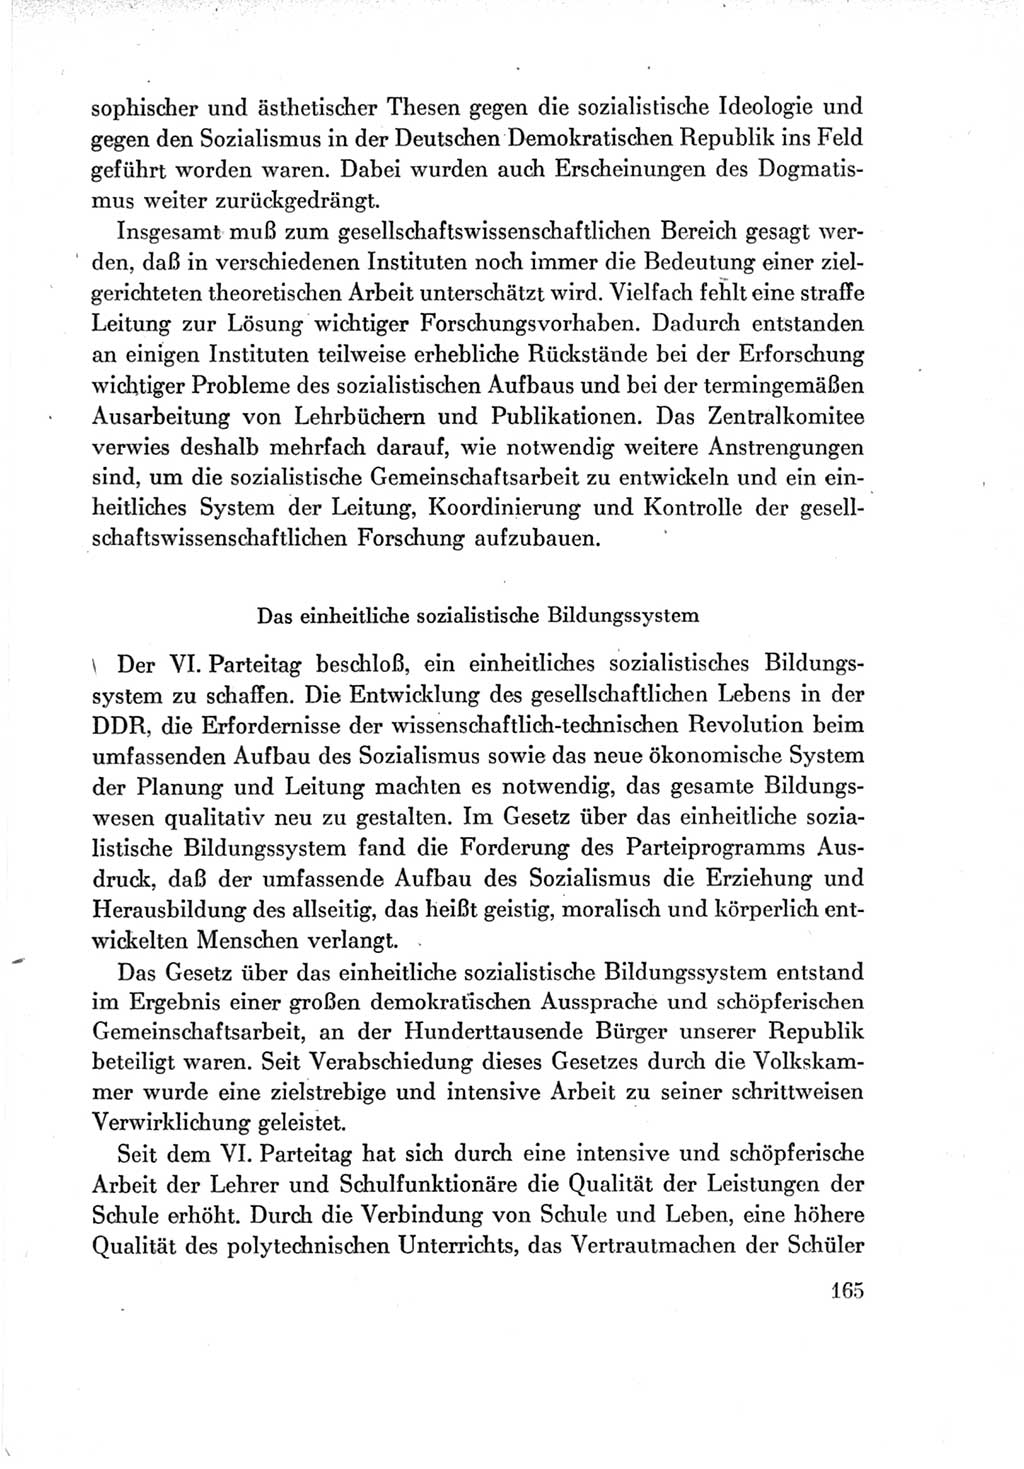 Protokoll der Verhandlungen des Ⅶ. Parteitages der Sozialistischen Einheitspartei Deutschlands (SED) [Deutsche Demokratische Republik (DDR)] 1967, Band Ⅳ, Seite 165 (Prot. Verh. Ⅶ. PT SED DDR 1967, Bd. Ⅳ, S. 165)